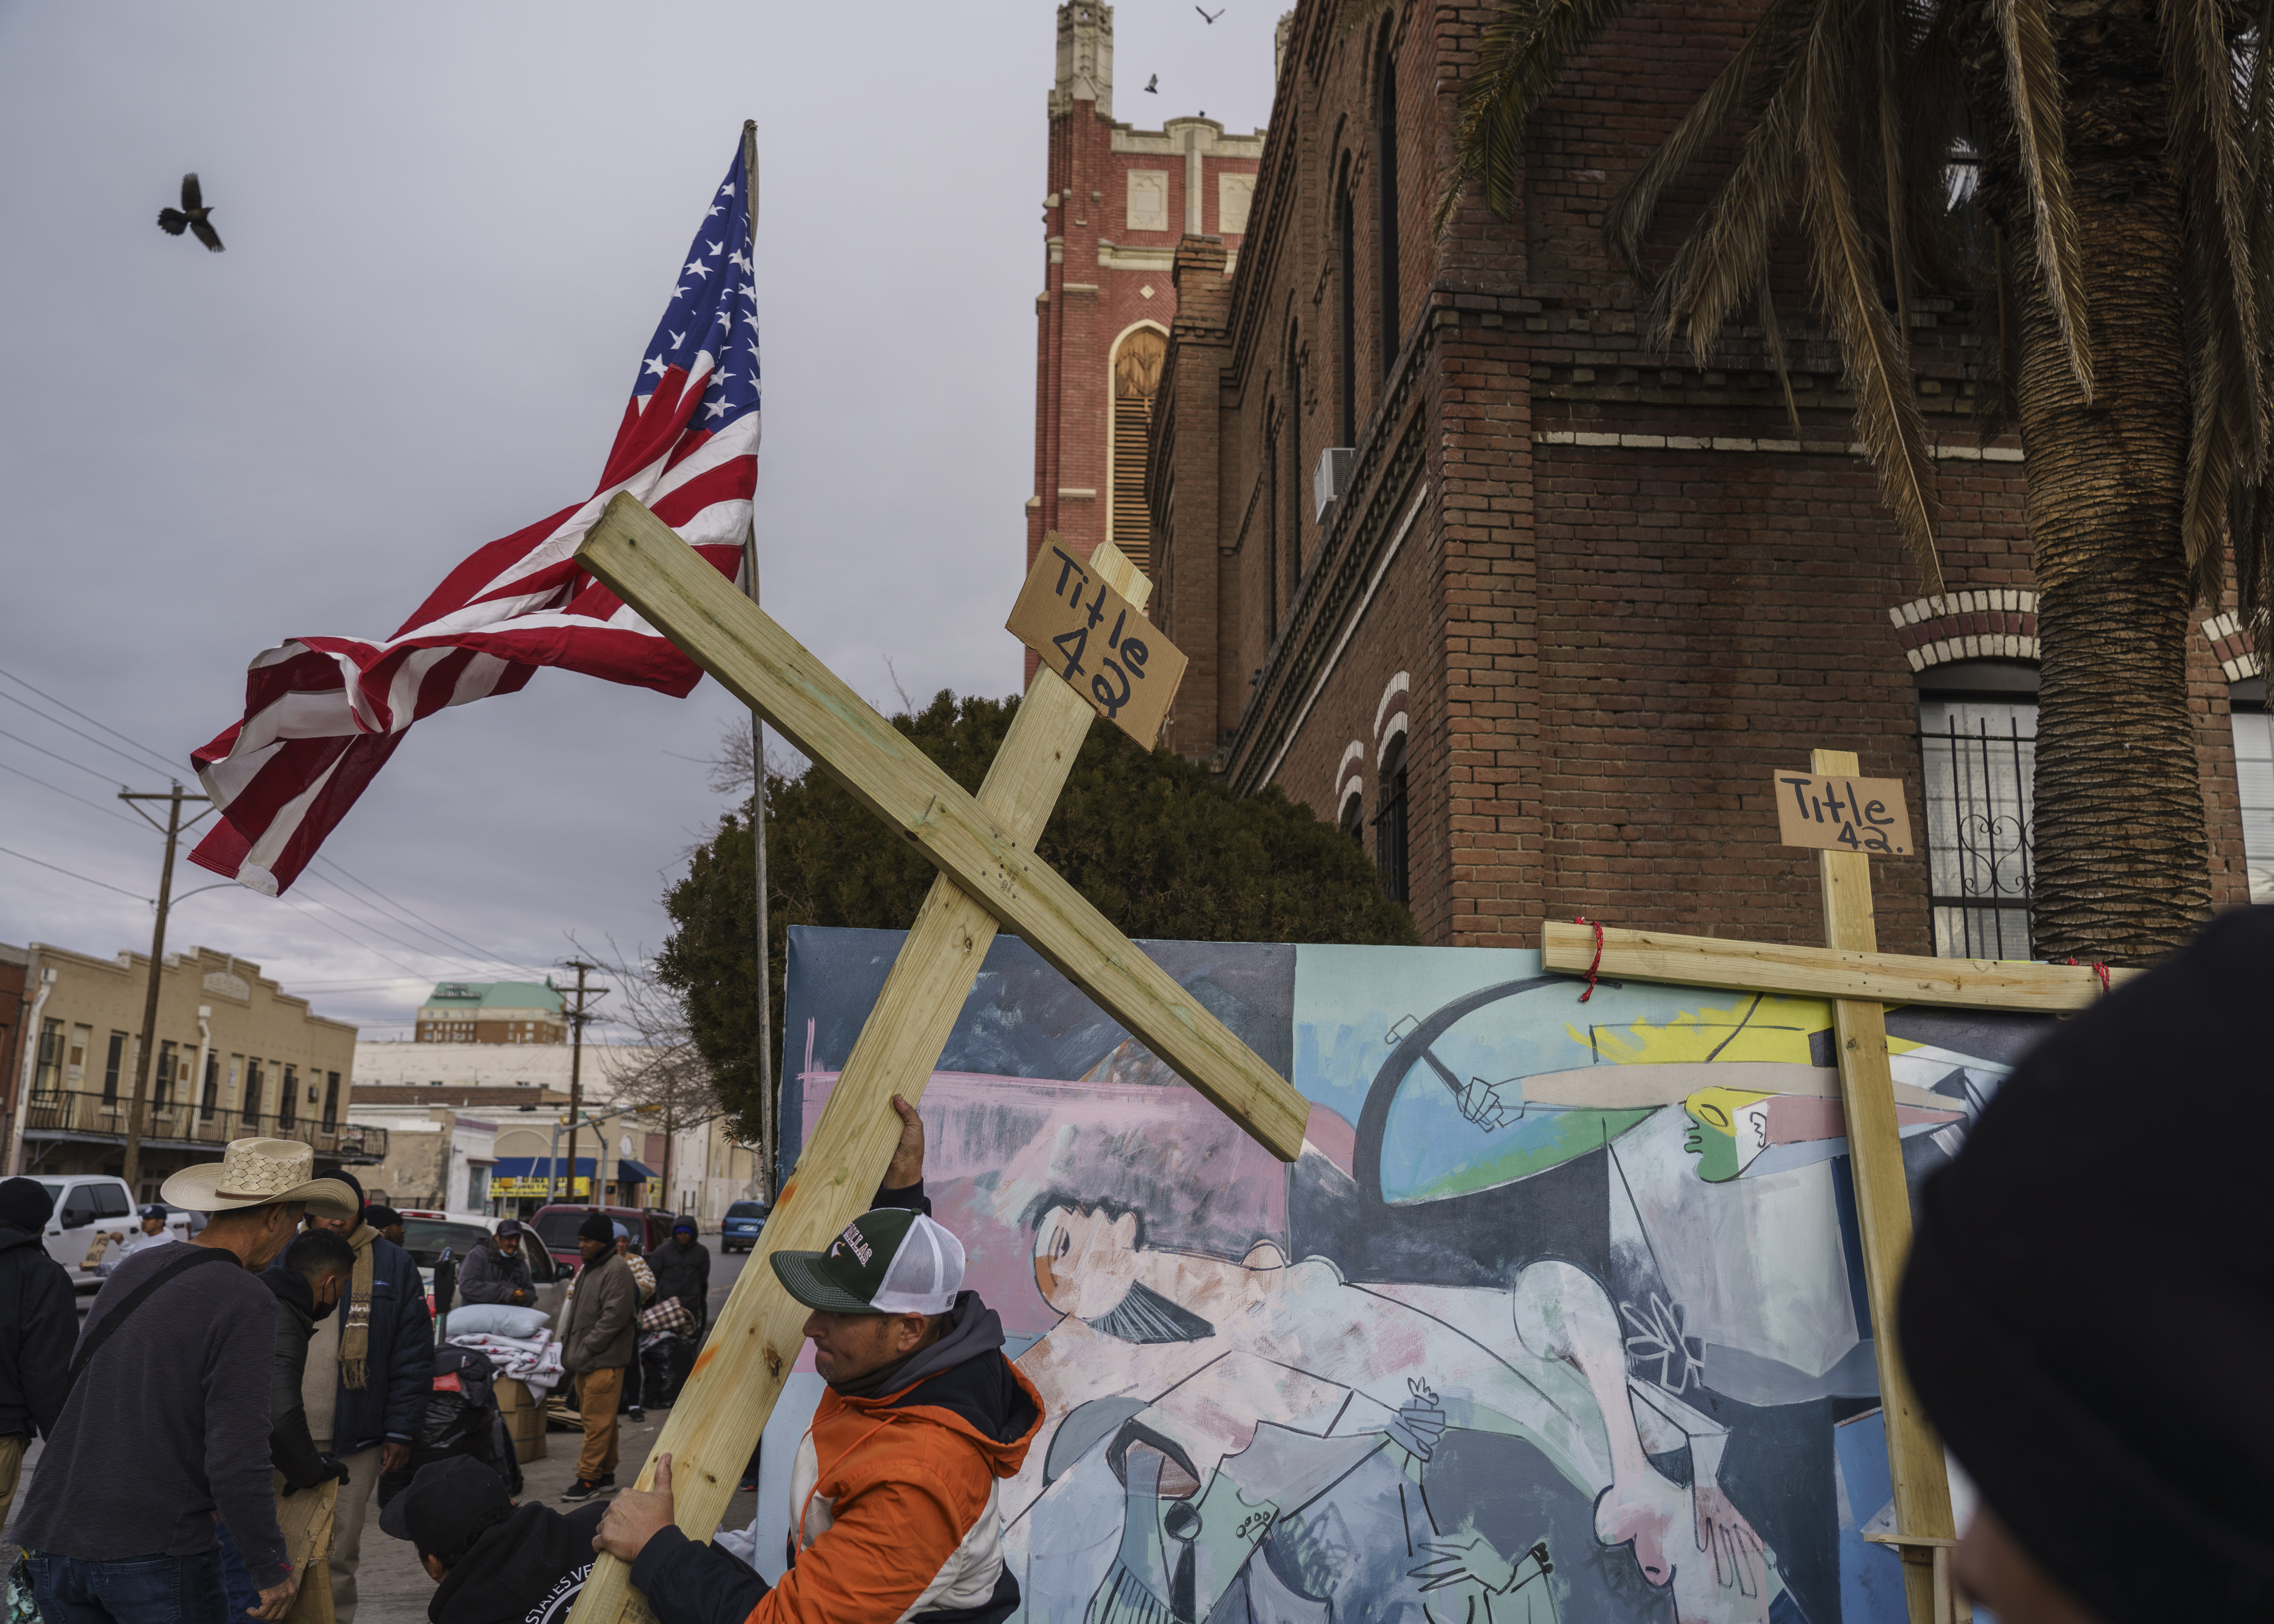 Migrantes preparan cruces para una protesta contra el Título 42, la medida de expulsión destinada a frenar el creciente número de migrantes que entran ilegalmente en Estados Unidos, en El Paso, Texas, el 28 de diciembre de 2022. (Foto Prensa Libre: Paul Ratje/The New York Times)